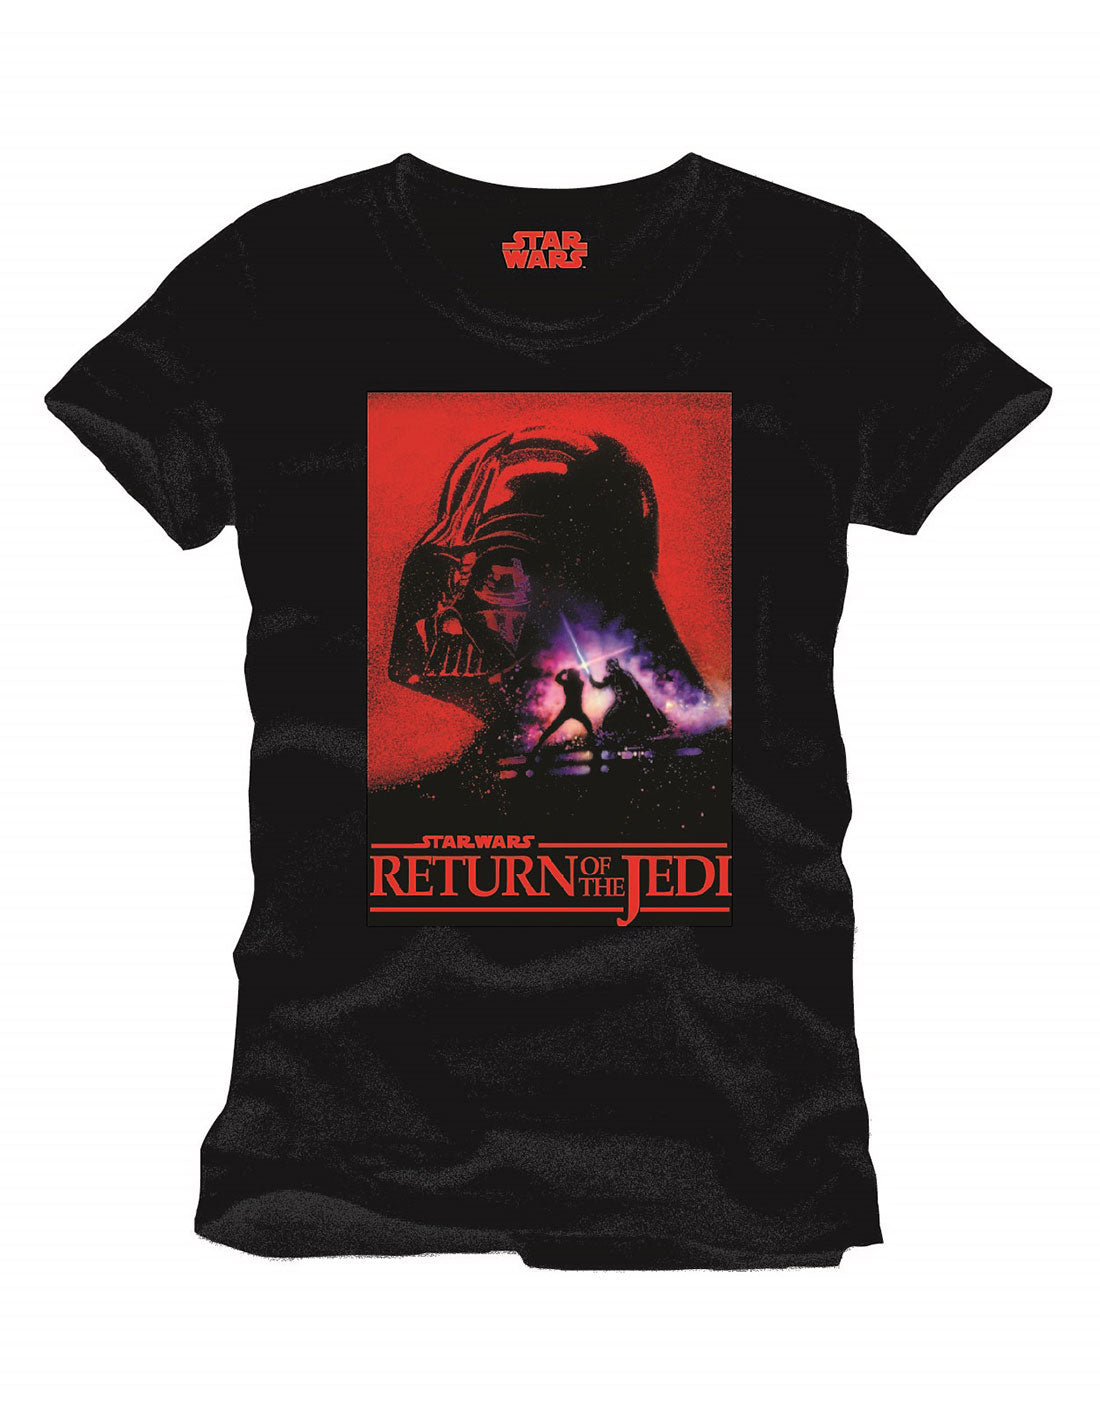 Star Wars T-shirt - Return of the Jedi 